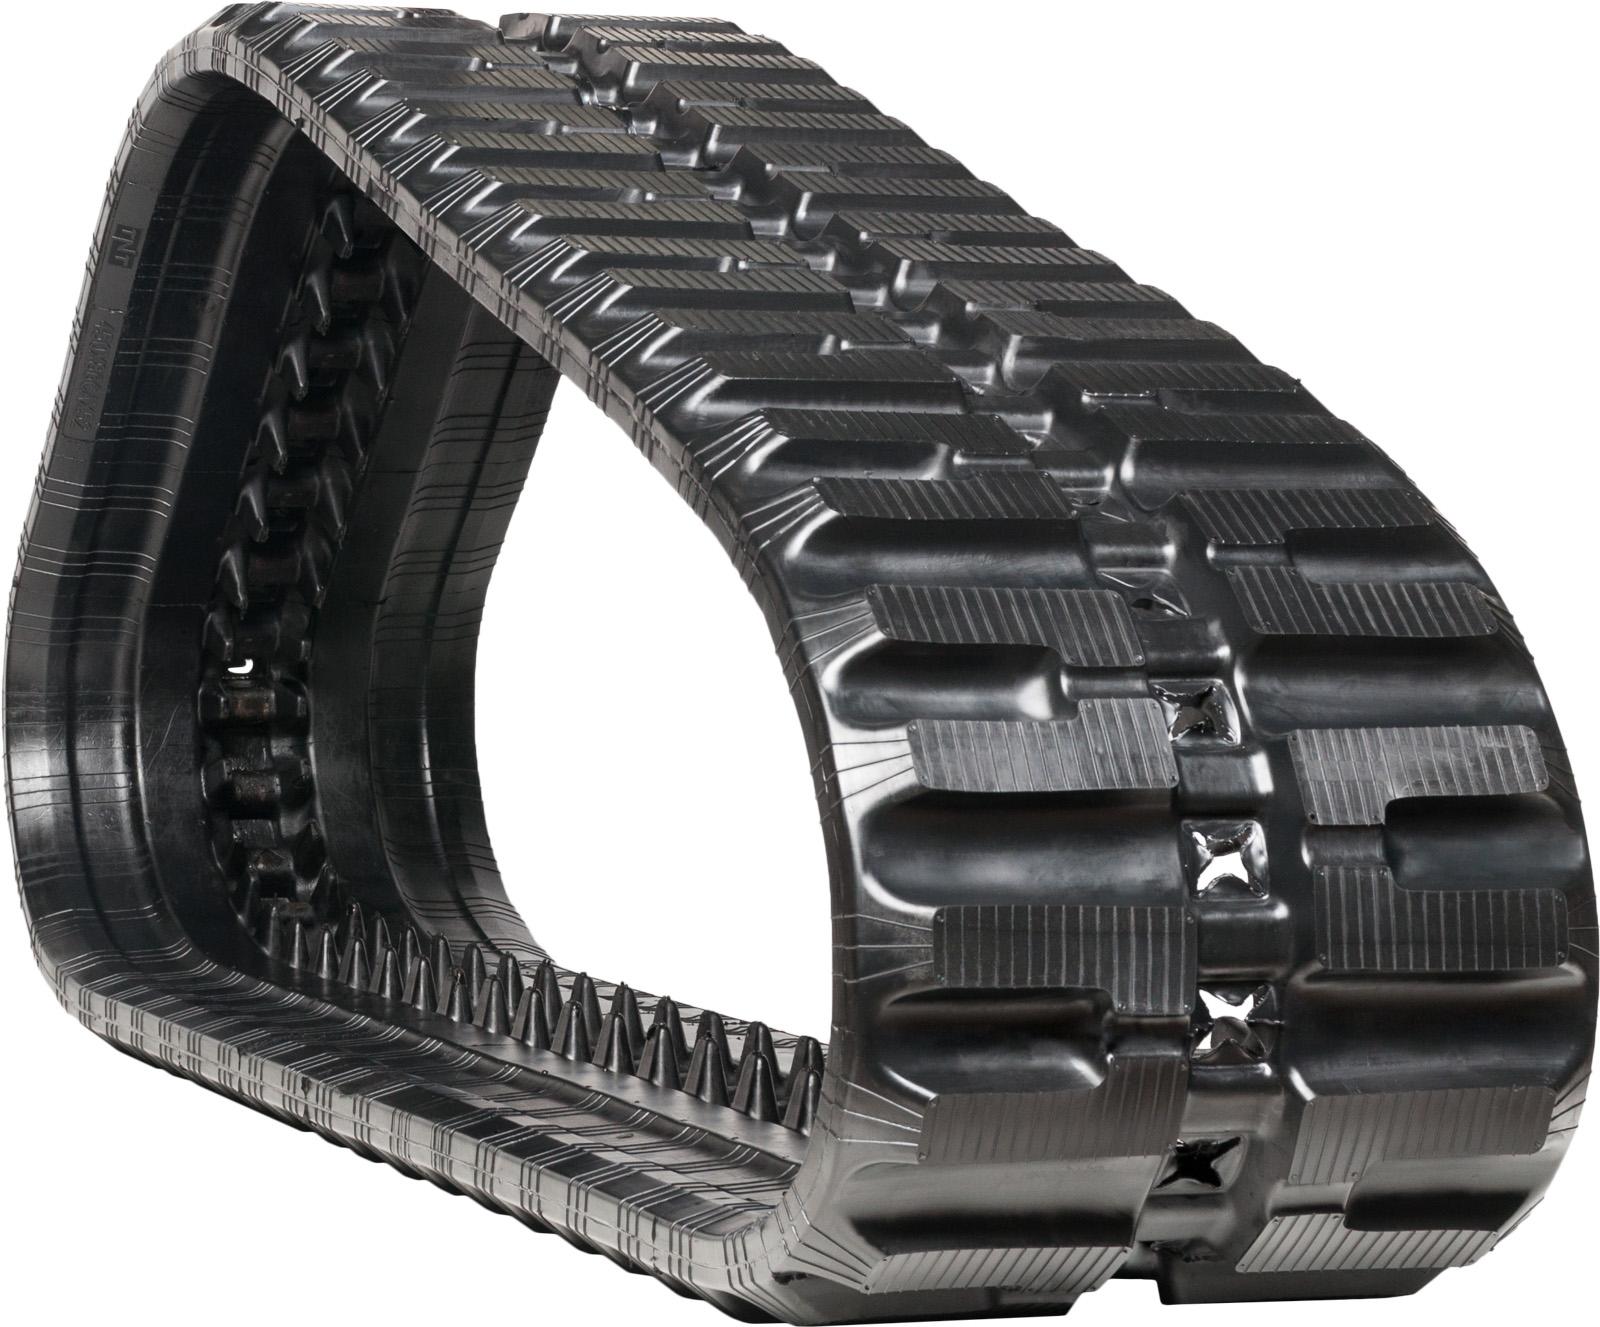 set of 2 18" heavy duty c pattern rubber track (450x86bx55)